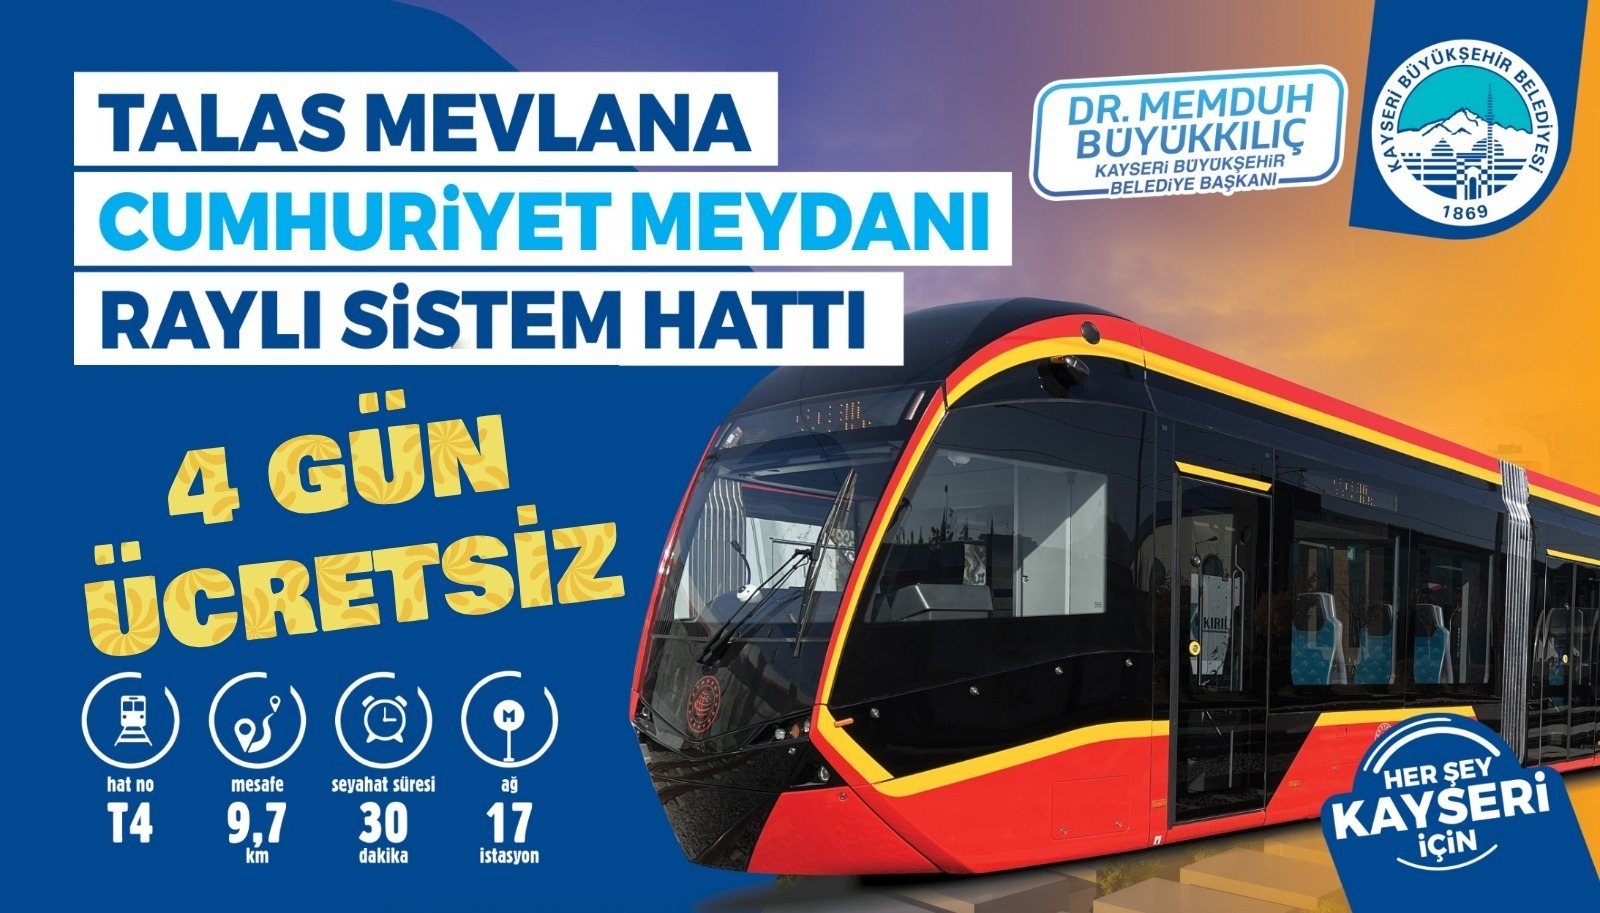 Başkan Büyükkılıç’tan Müjde: “Yeni Tramvay Hattı, 4 Gün Boyunca Ücretsiz”